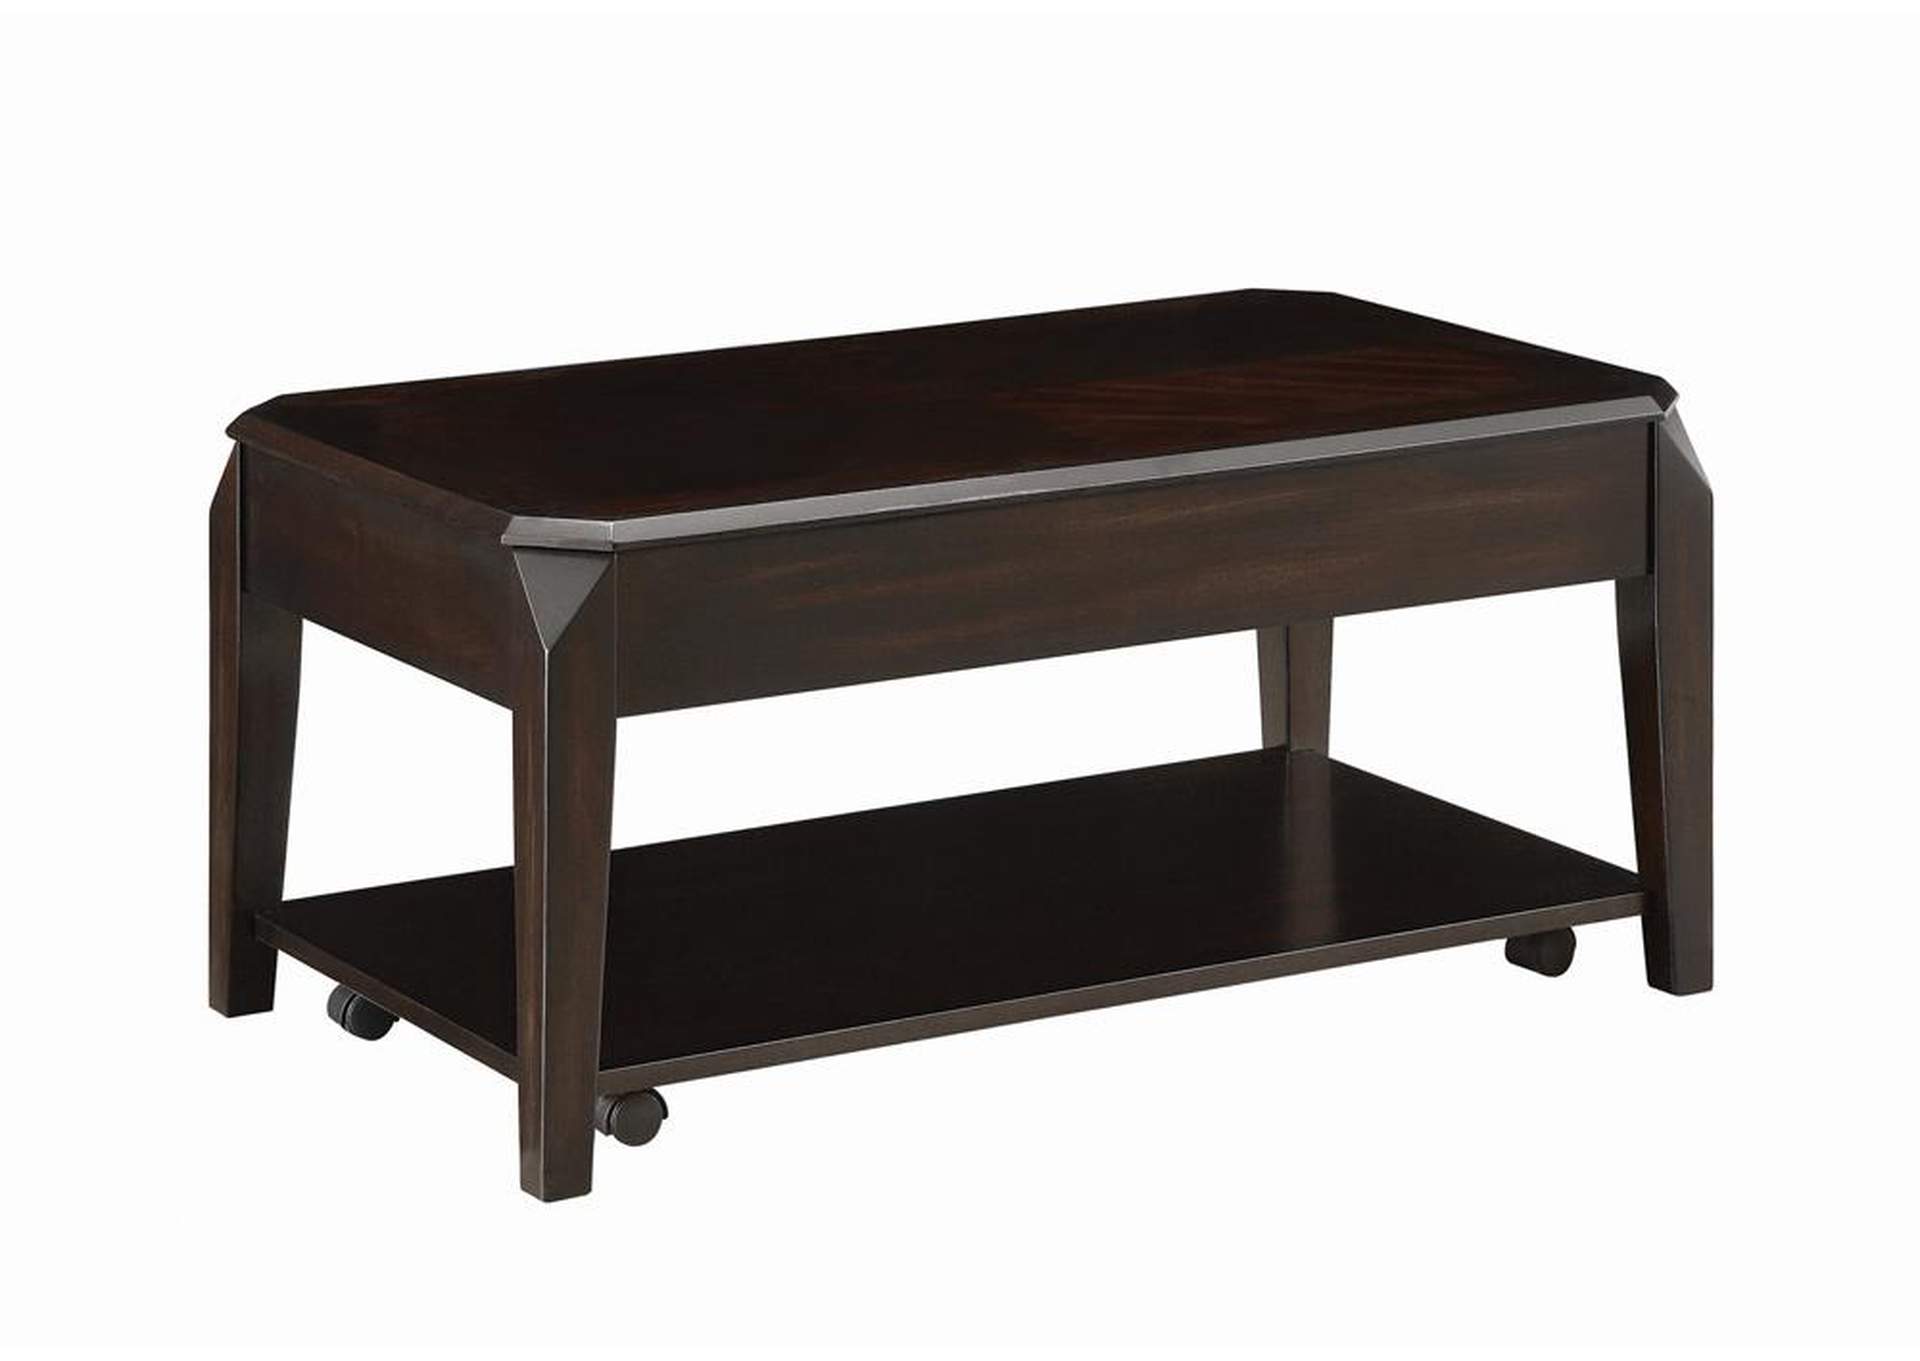 Walnut Transitional Walnut Lift-Top Coffee Table,Coaster Furniture